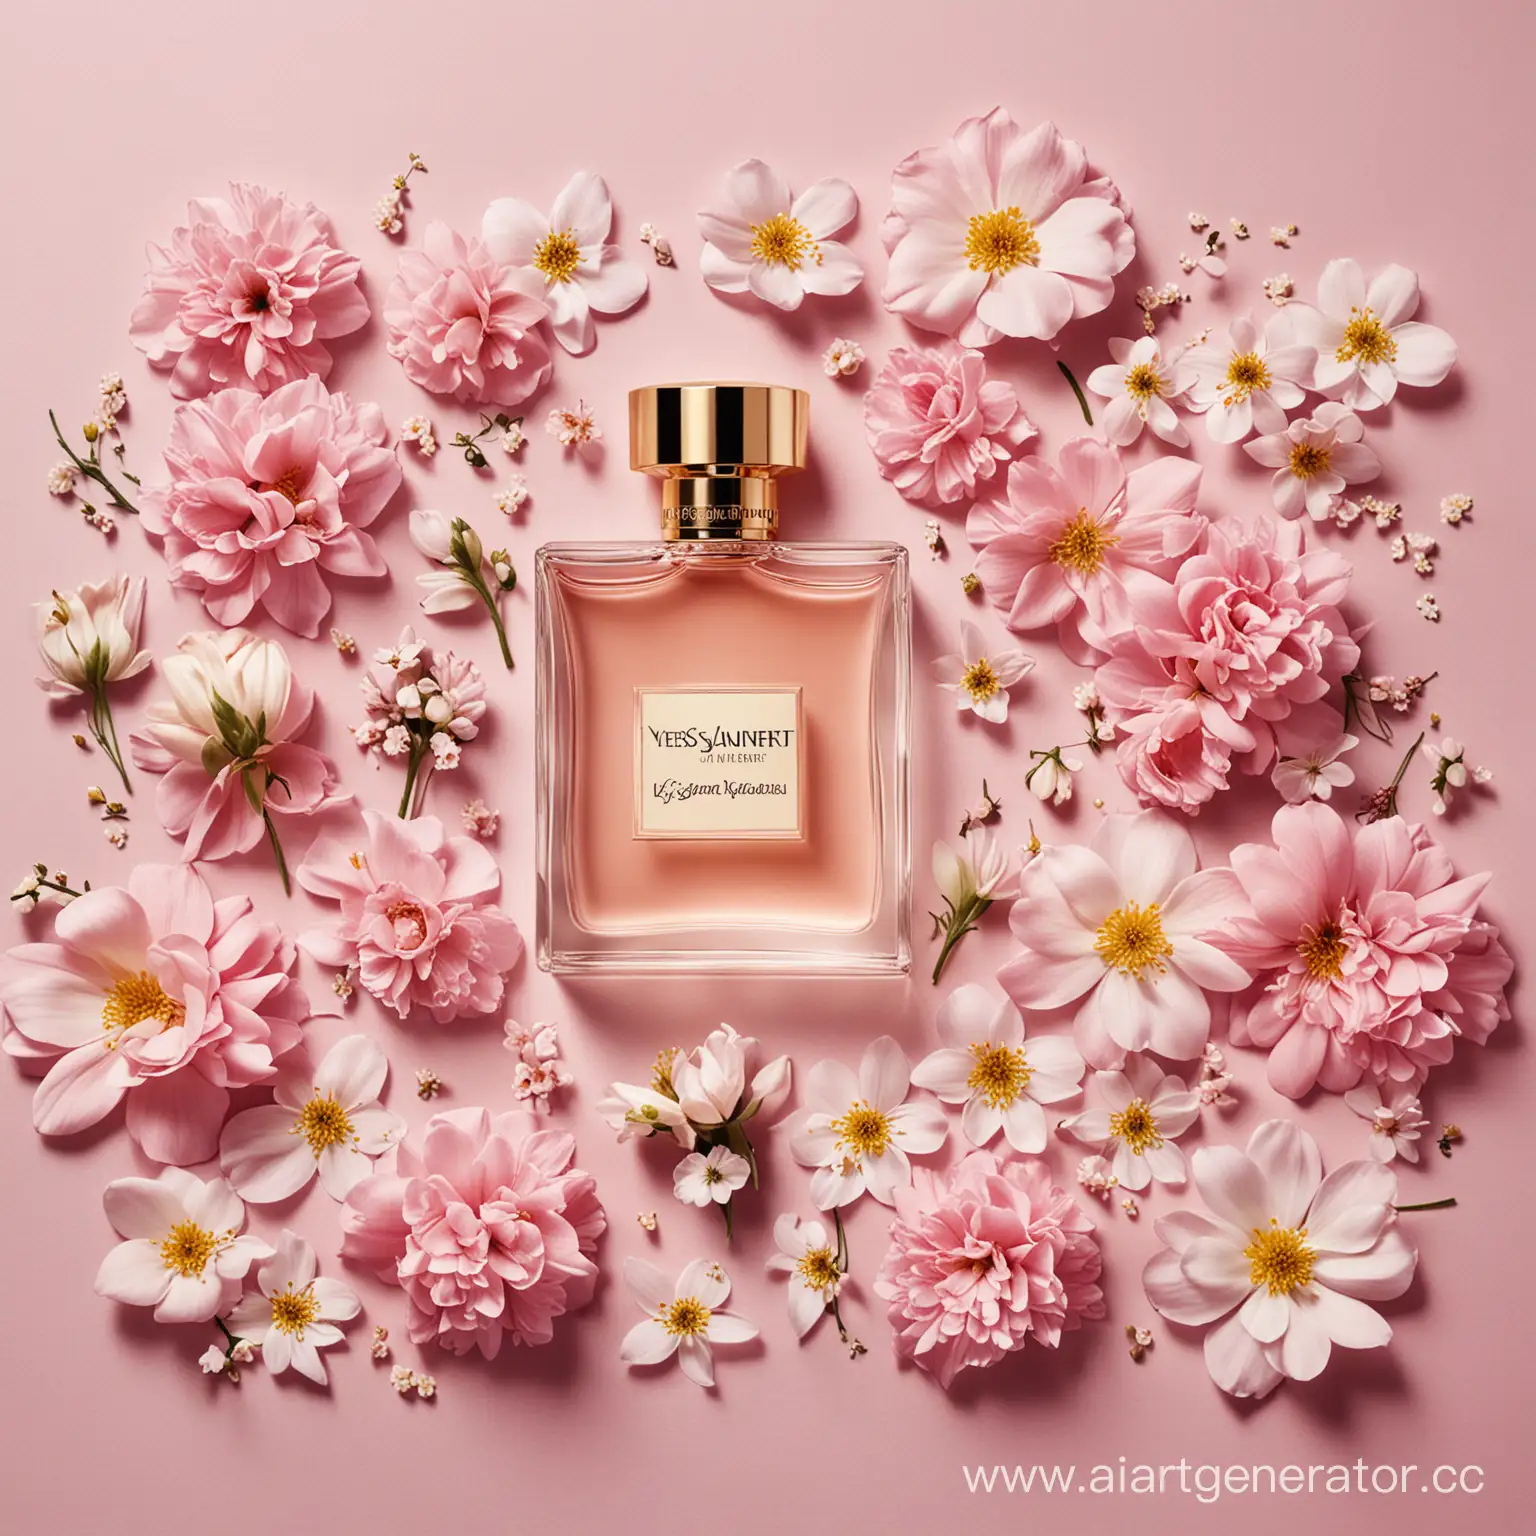 рекламное изображение к бренду Yves Saint Laurent, много духов, маленькие цветочки, шлейф аромата, нежность